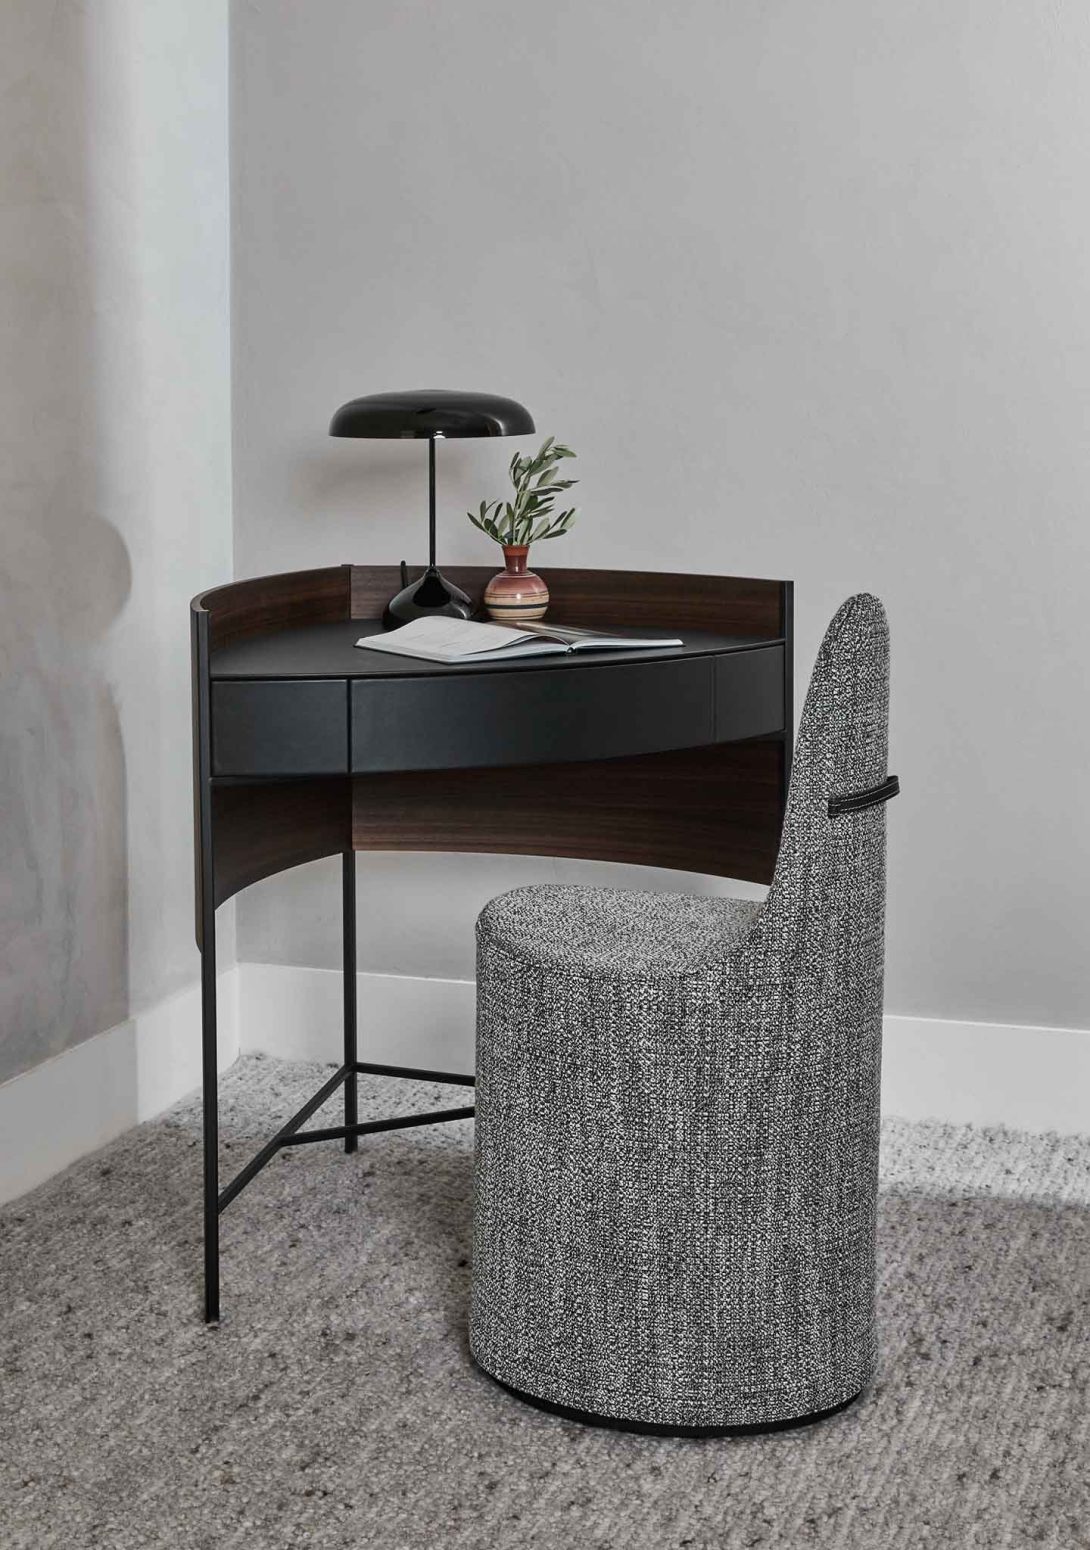 Designer contemporary corner desk black legs black metal dark wood one drawer Bloom Desk Presotto Landscape Upholstered Chair with Leather Back Strap